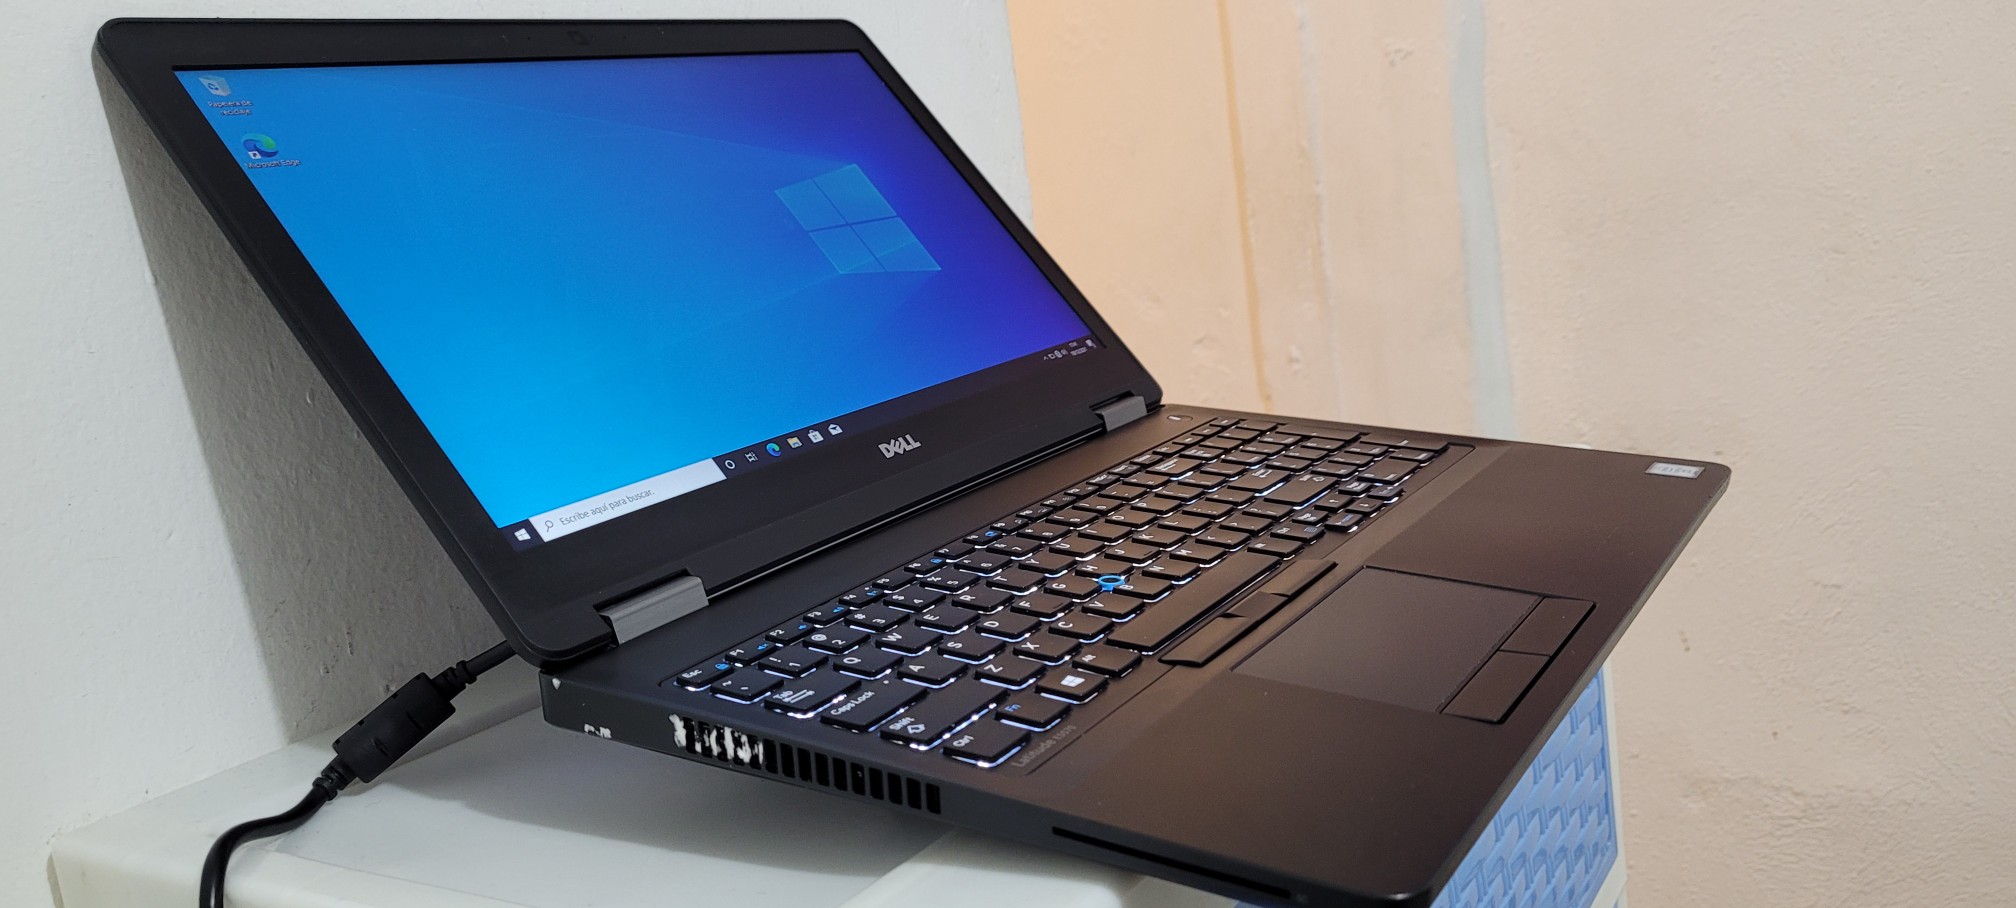 computadoras y laptops - Dell 5570 17 Pulg Core i5 6ta Ram 8gb ddr4 Disco 500gb teclado iluminado 1